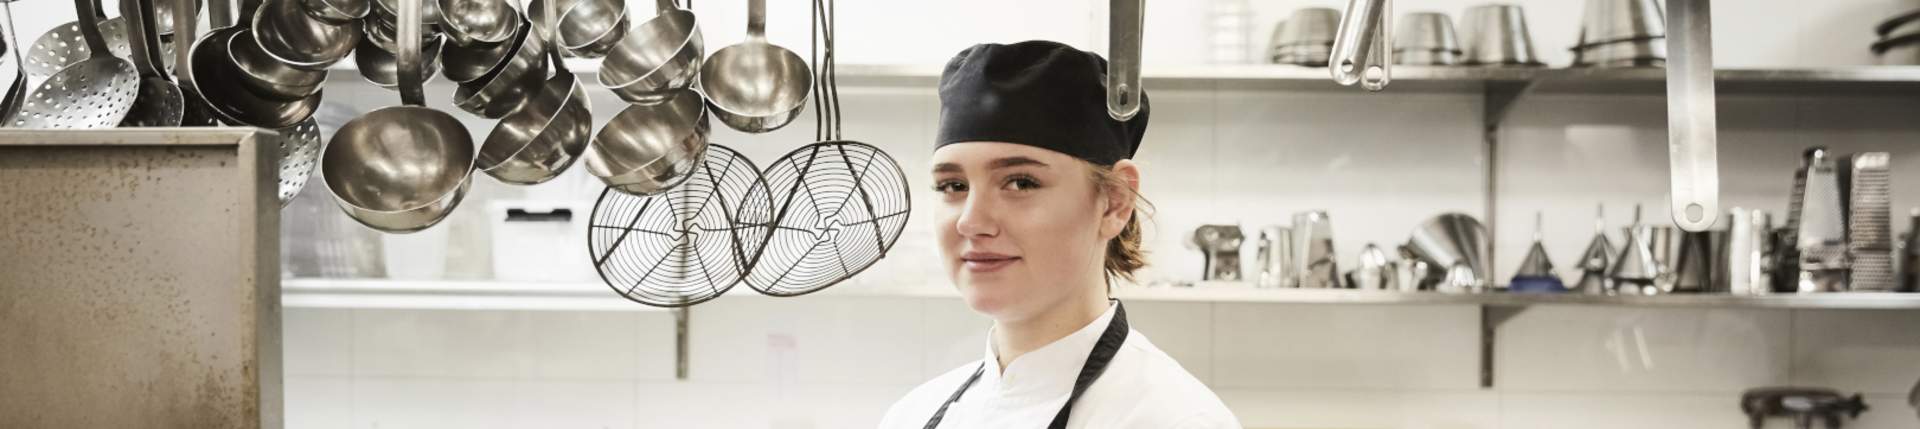 Chef portrait in her kitchen